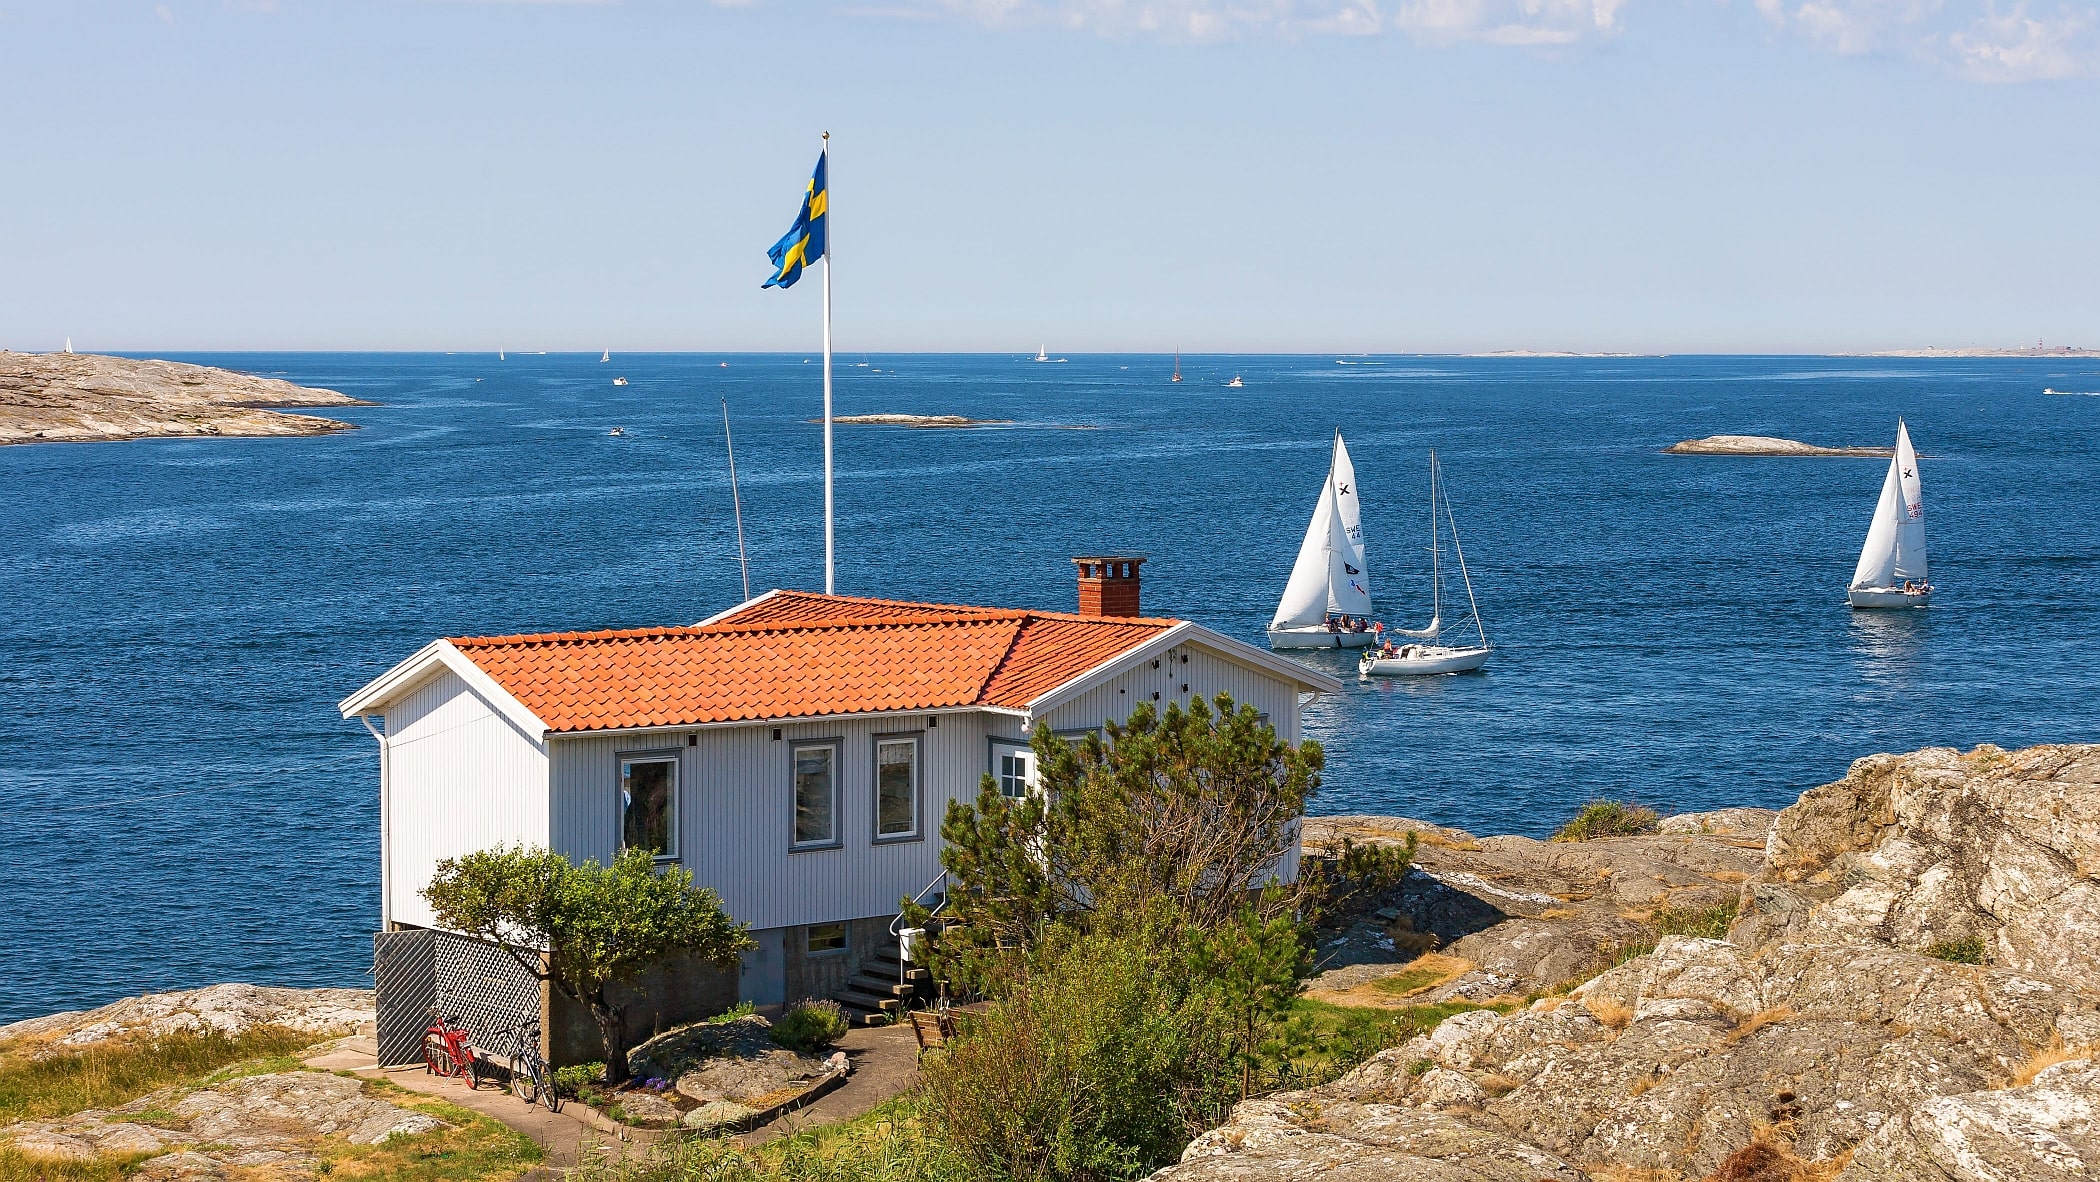 Vit sommarstuga på klipporna vid havet. Svenska flaggan vajar från en flaggstång och på havet seglar två båtar